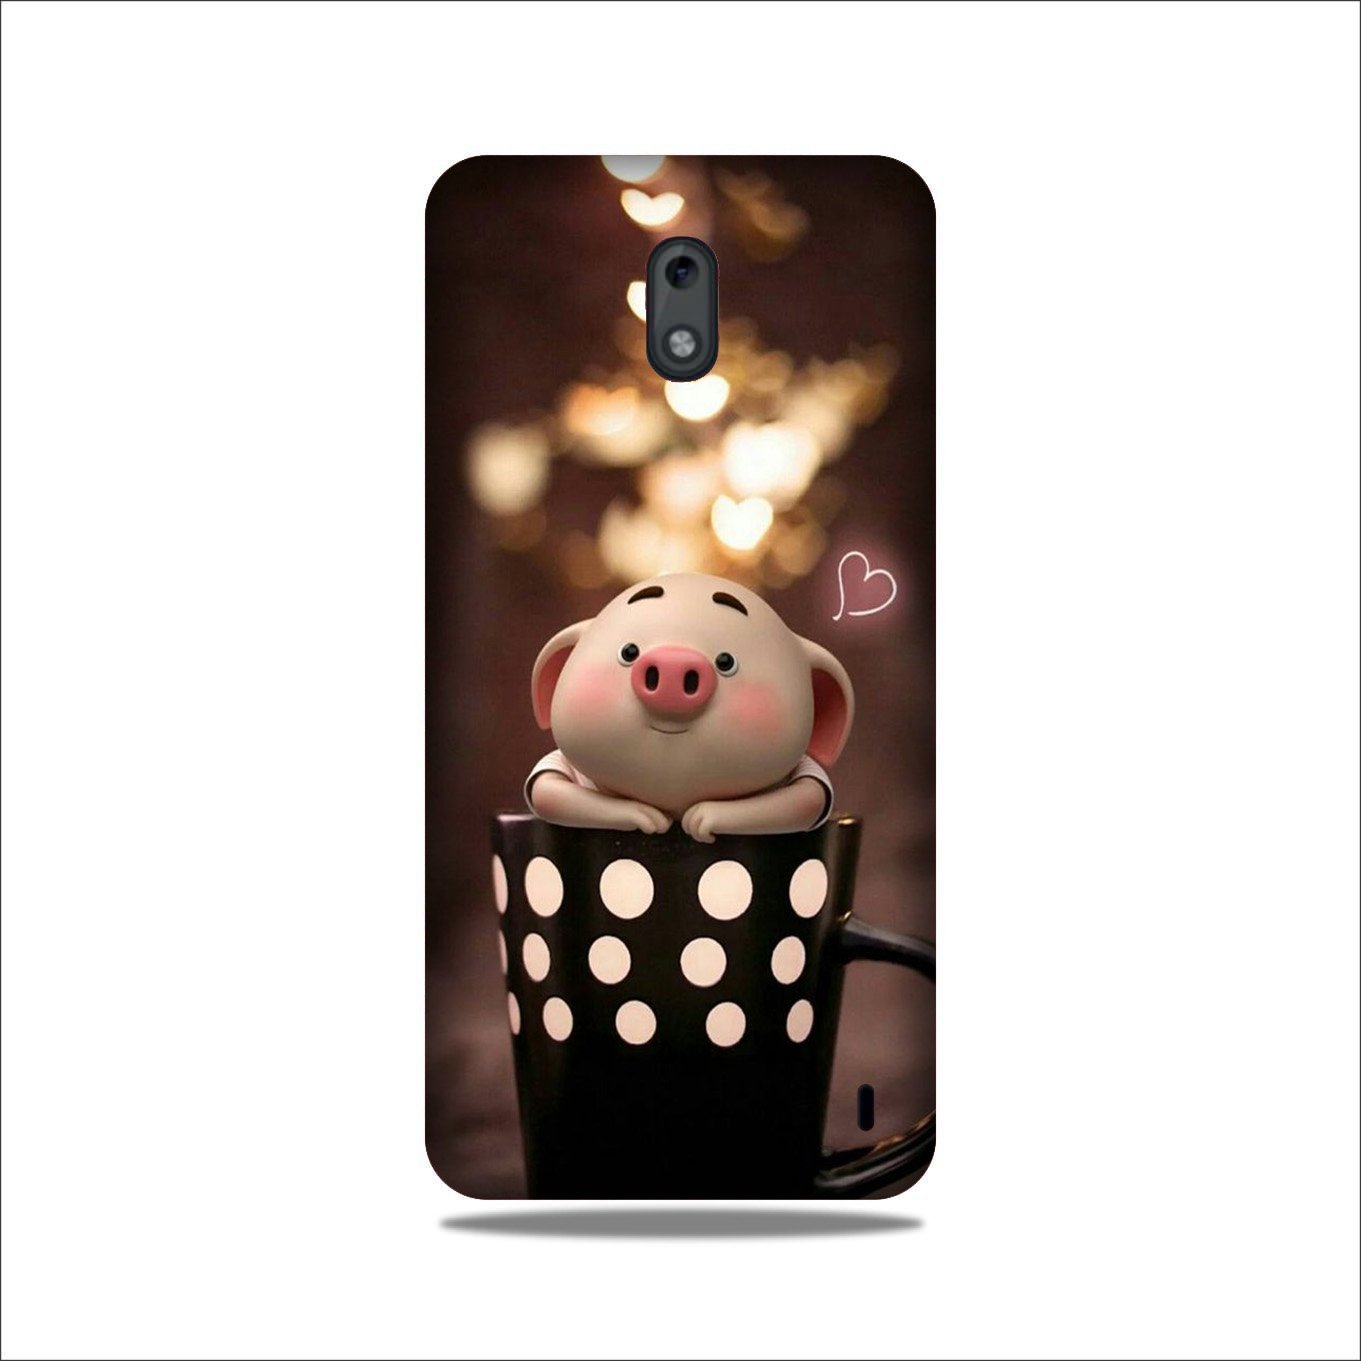 Cute Bunny Case for Nokia 2.2 (Design No. 213)